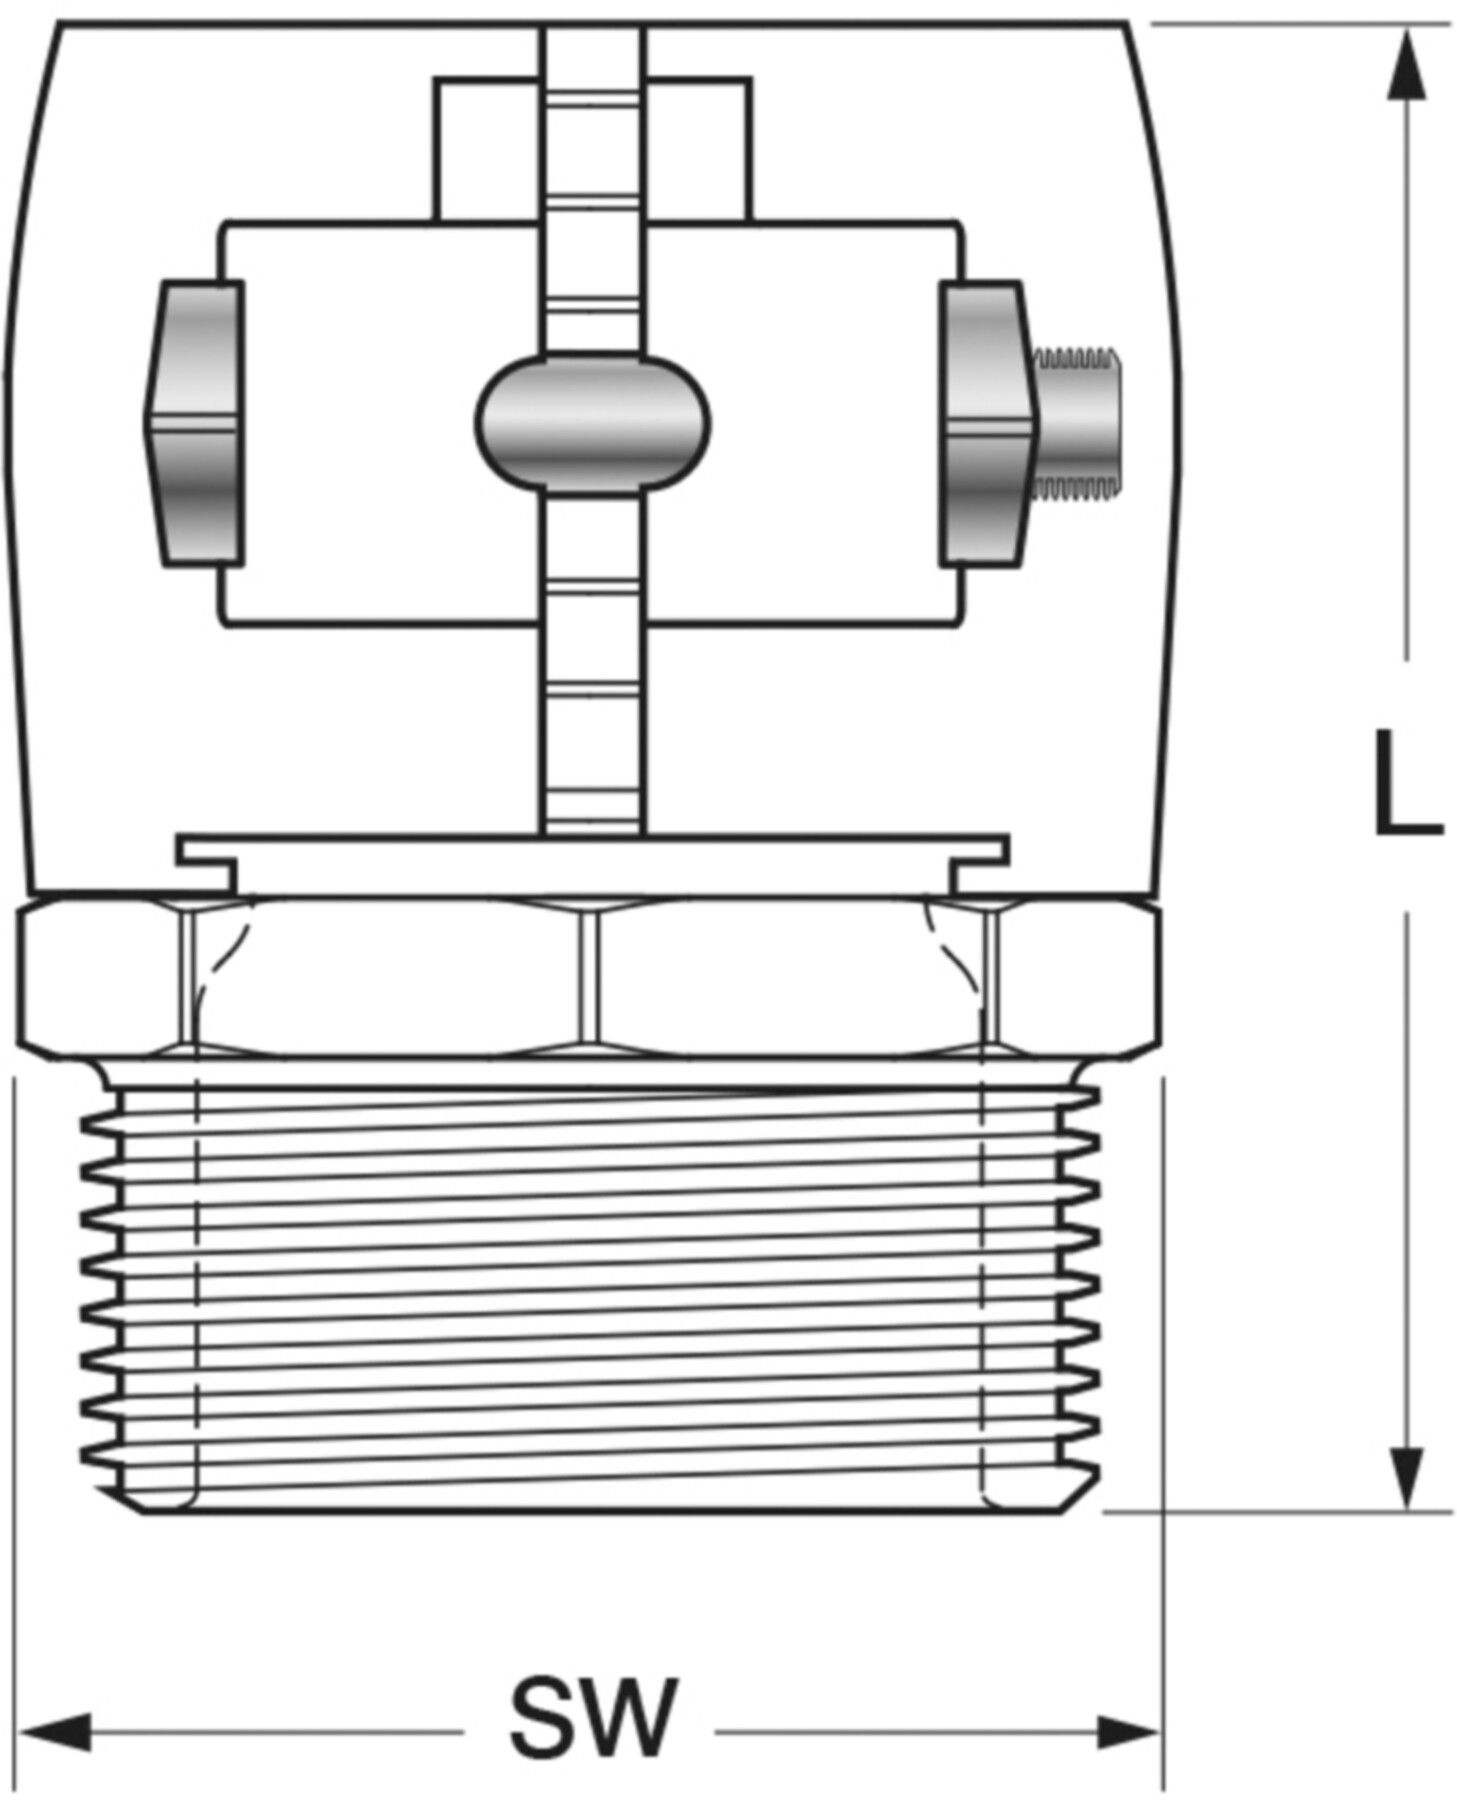 Klemm-Verbindungen mit Aussengewinde Jentro H - 25 ø 25/2.3 mm AG 3/4" - Isopex Fernwärmeleitung